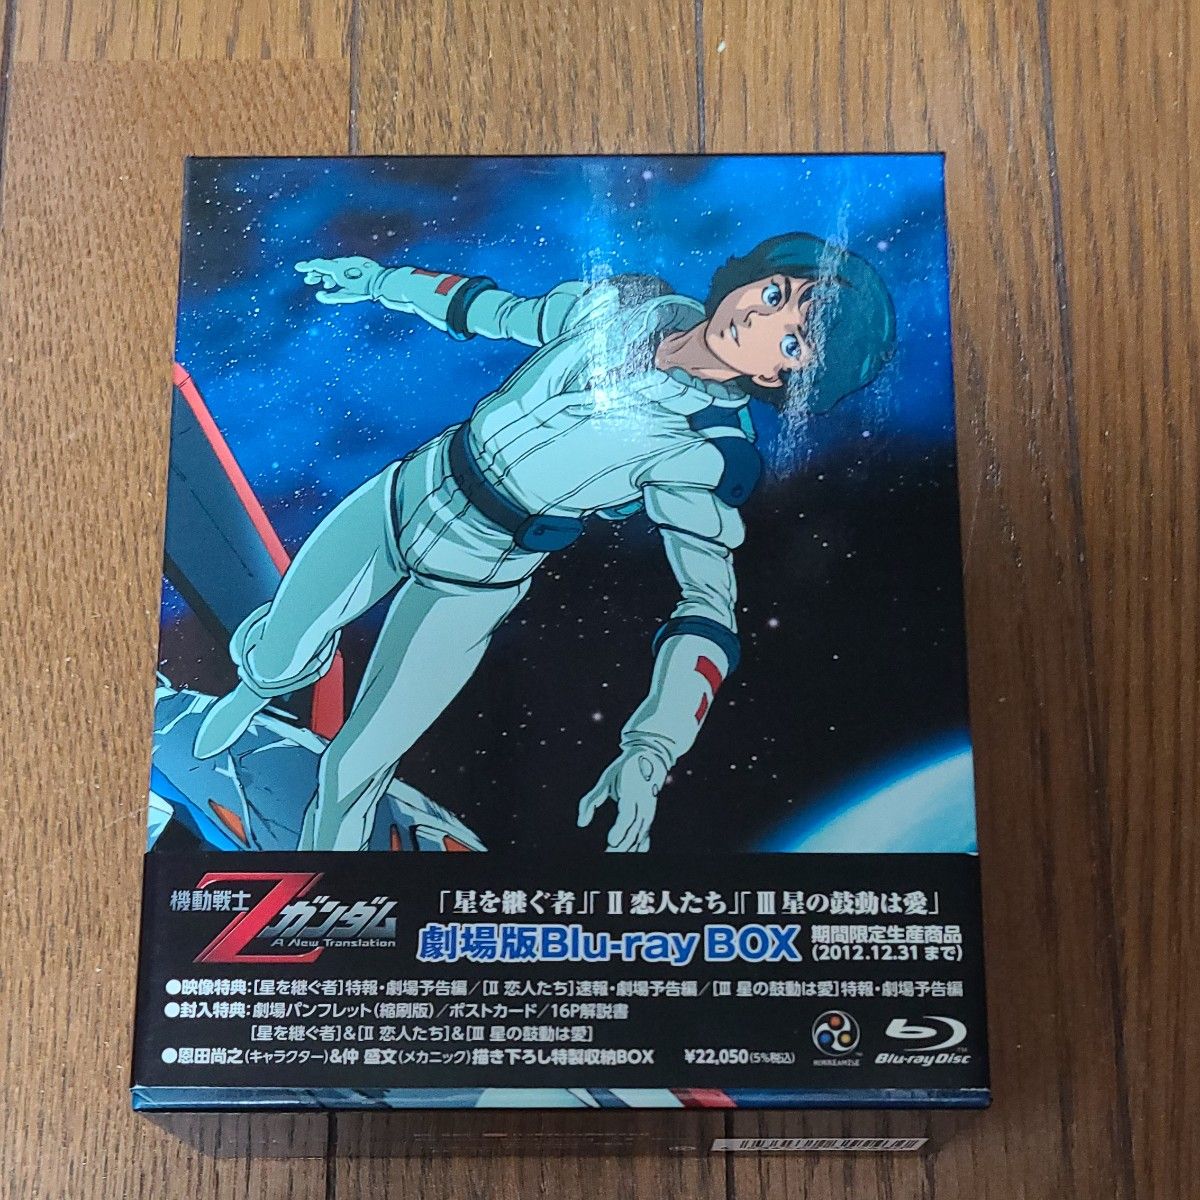 機動戦士Zガンダム 劇場版Blu-ray BOX〈2012年12月31日までの期間限定